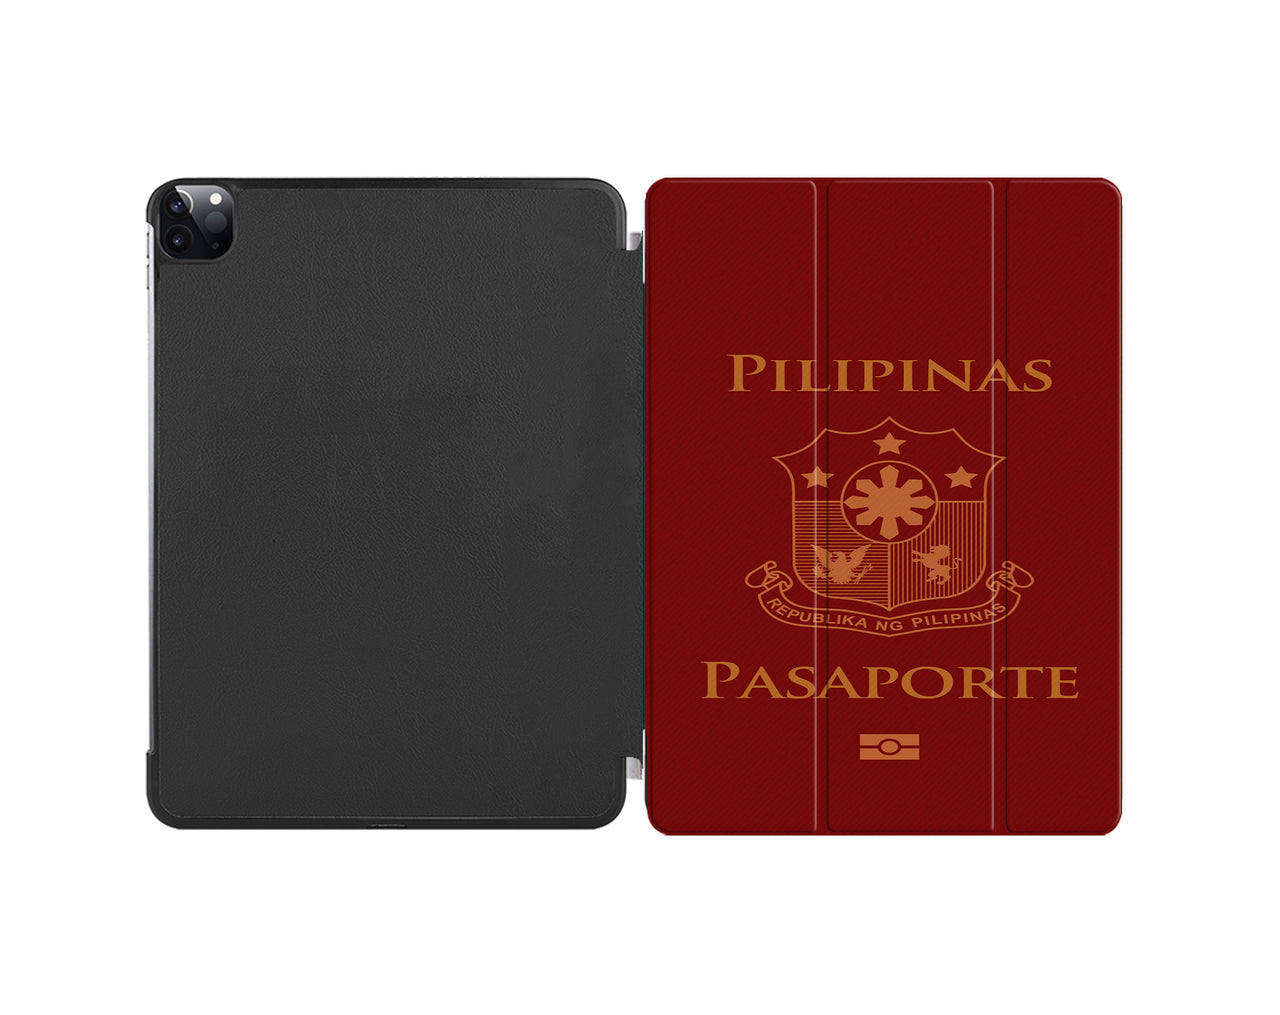 Philippines Passport Designed iPad Cases